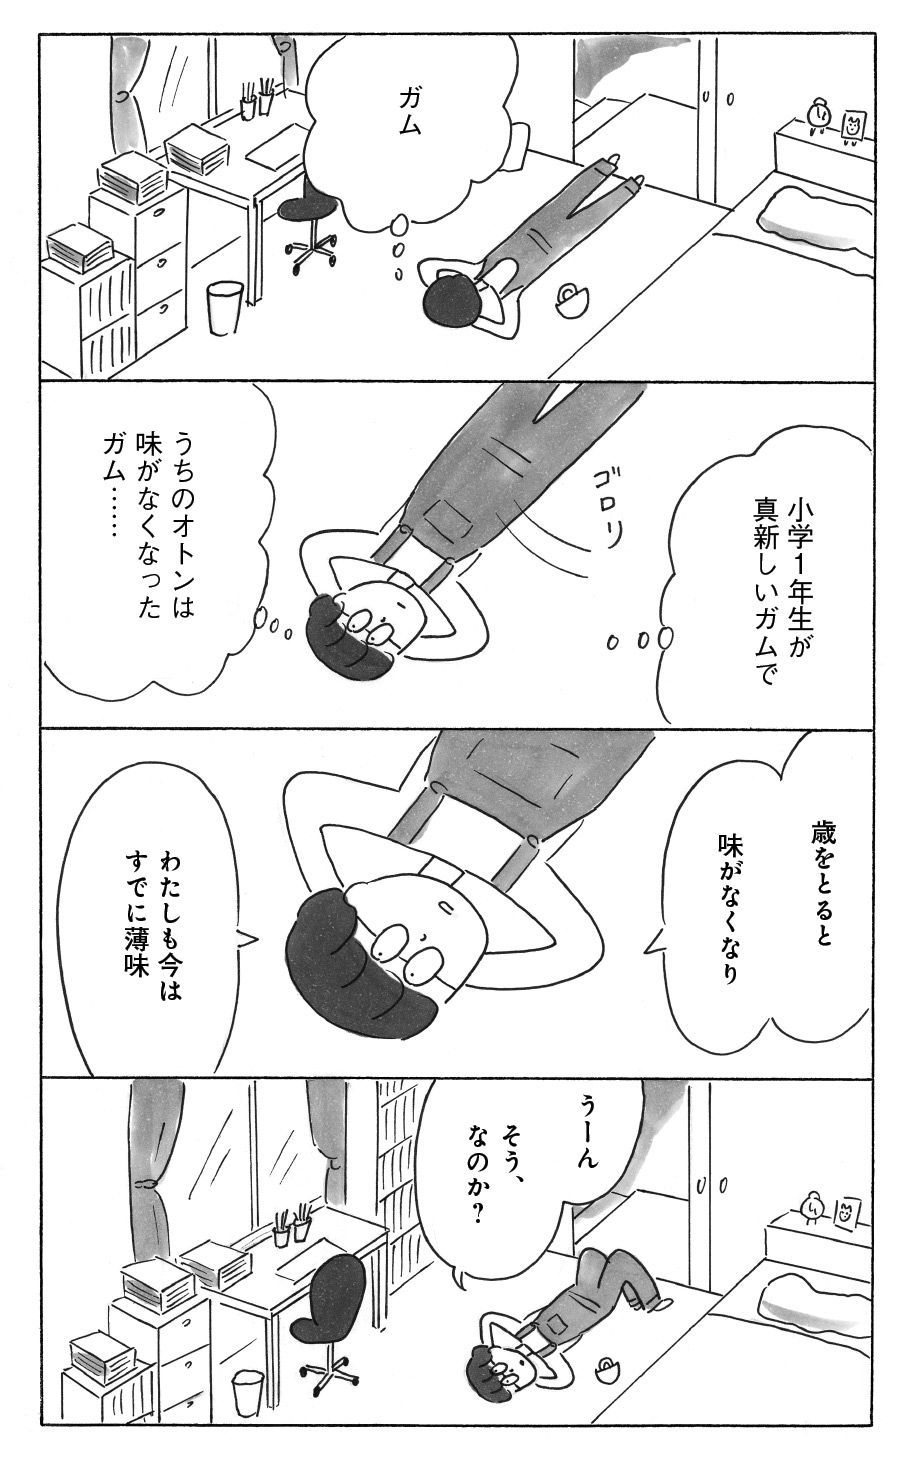 4ページ目）【漫画】益田ミリ 子どものフレッシュさを真新しいガムだとしたら…歳をとるほど味がしなくなる？人生長い方が濃縮される気がして ツユクサナツコの